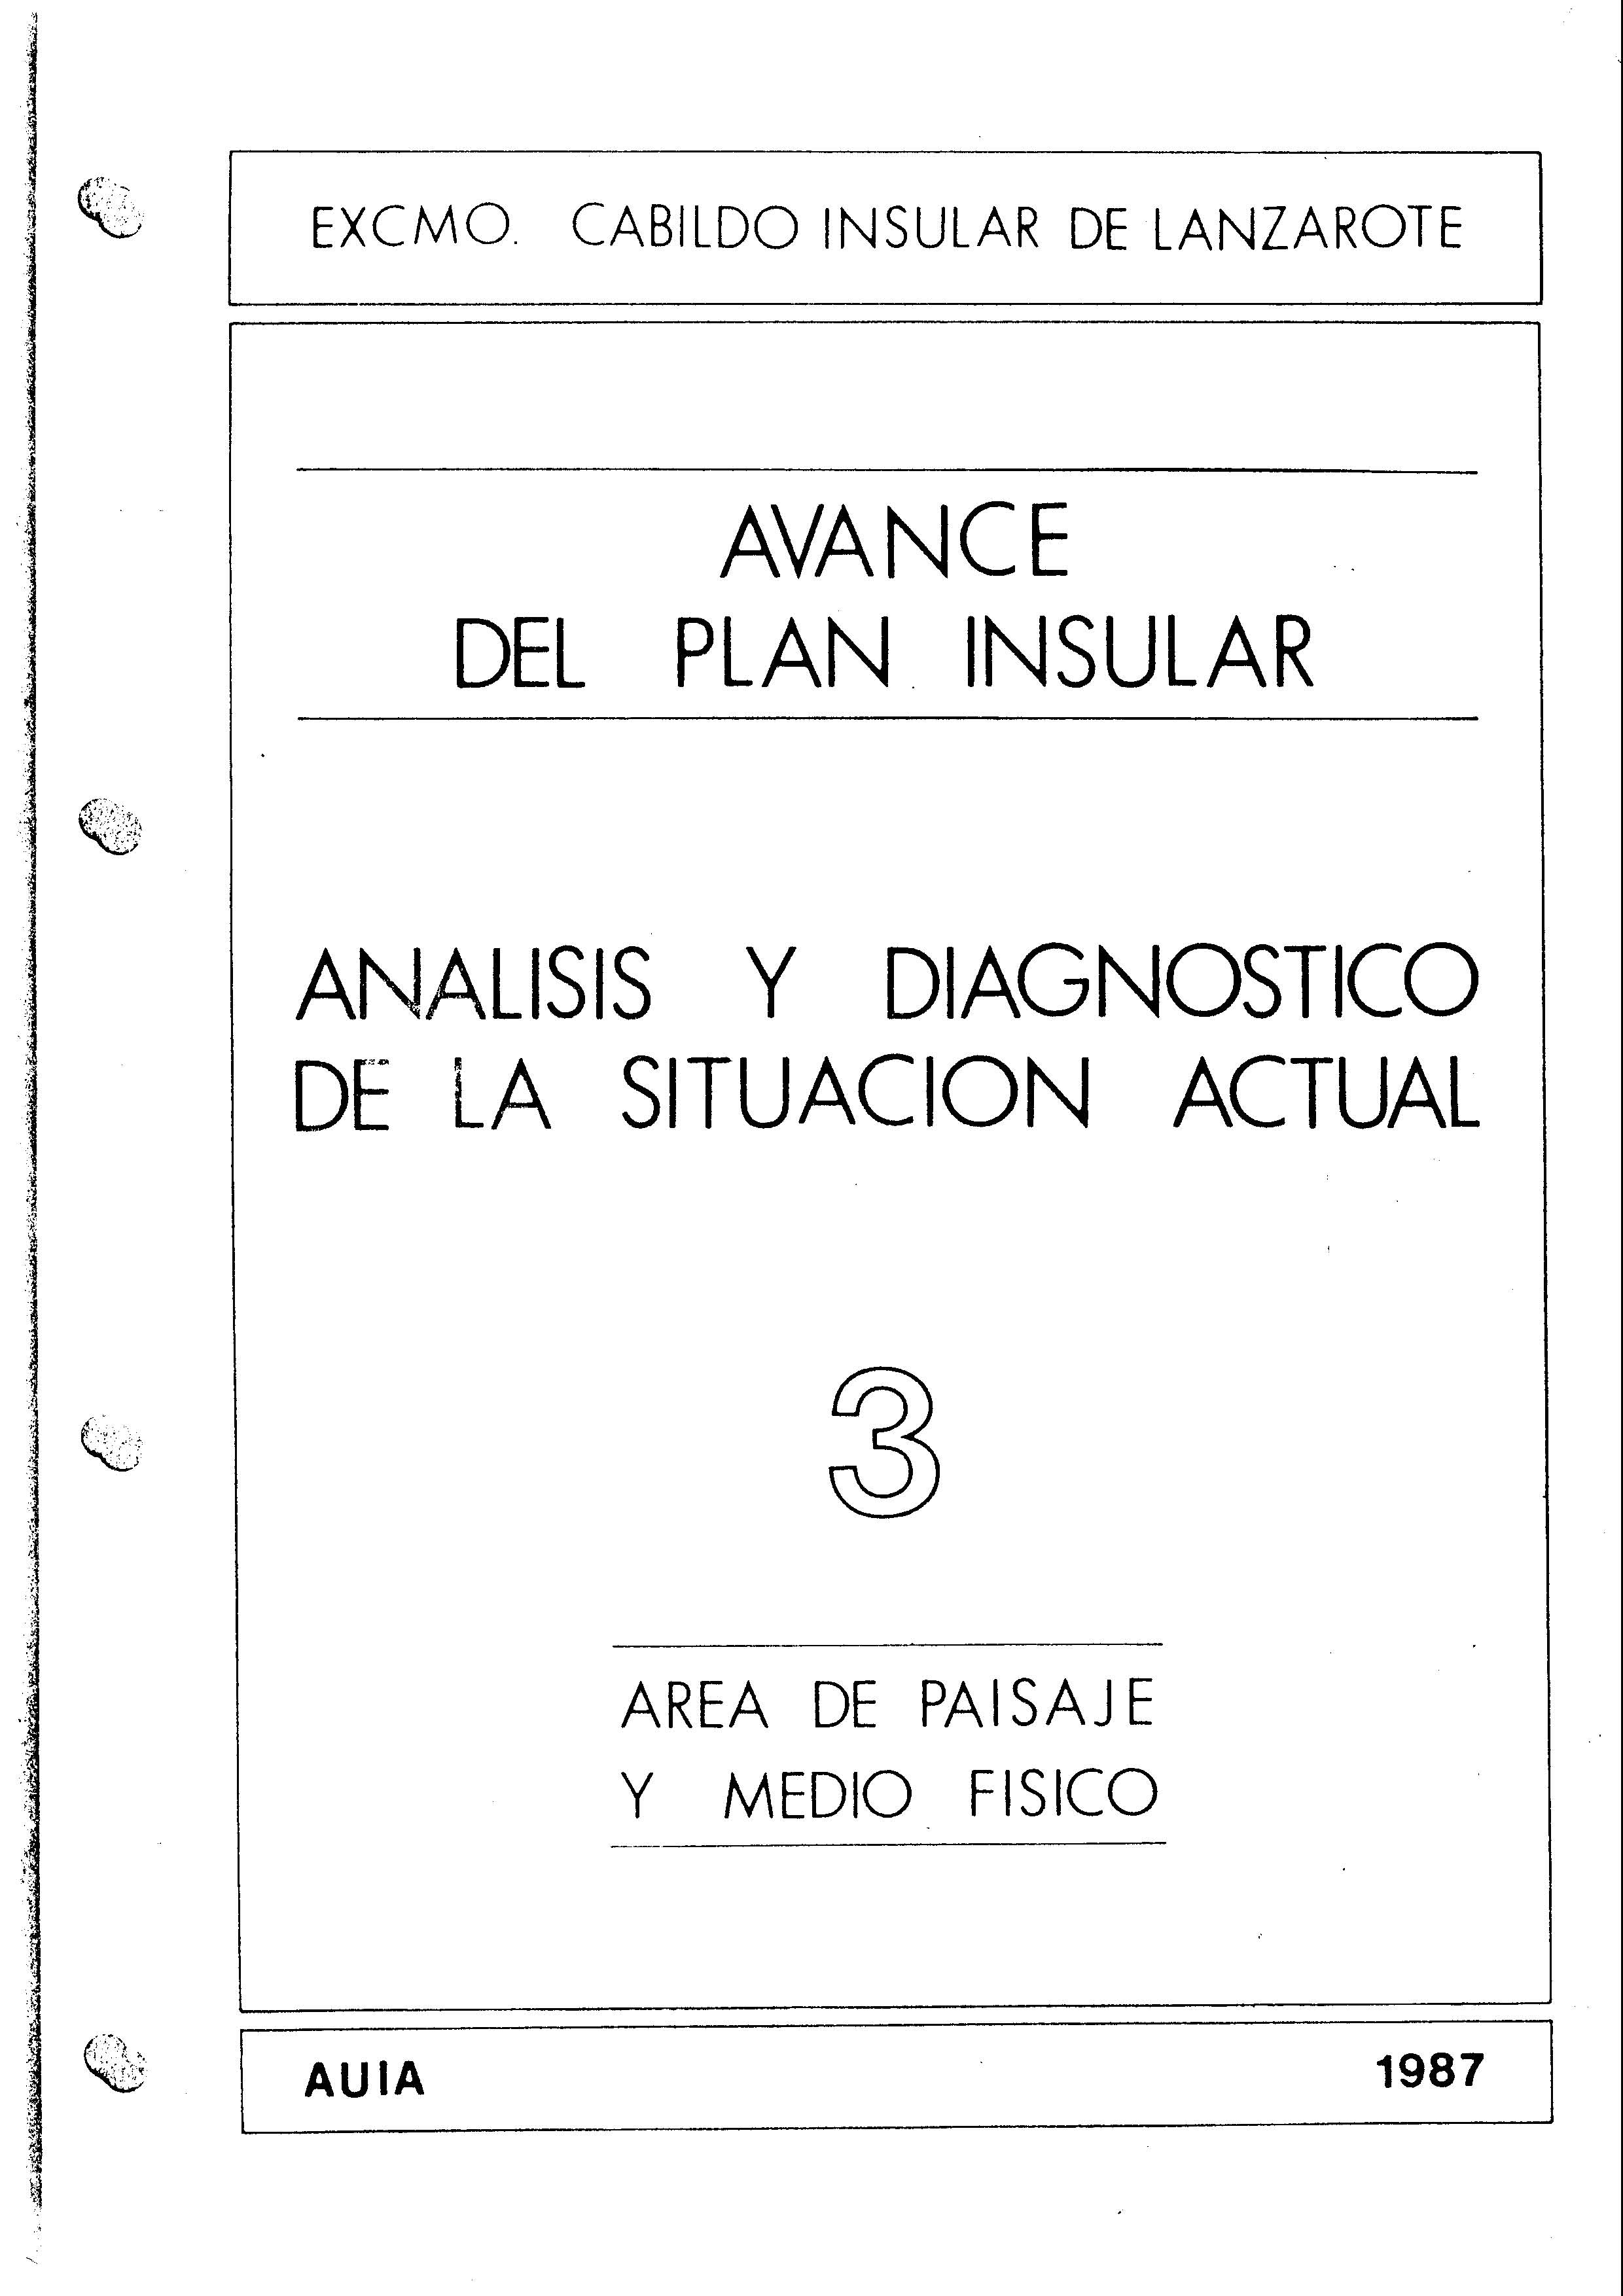 Tomo 3. Paisaje y Medio Físico. Avance Plan Insular (1987)